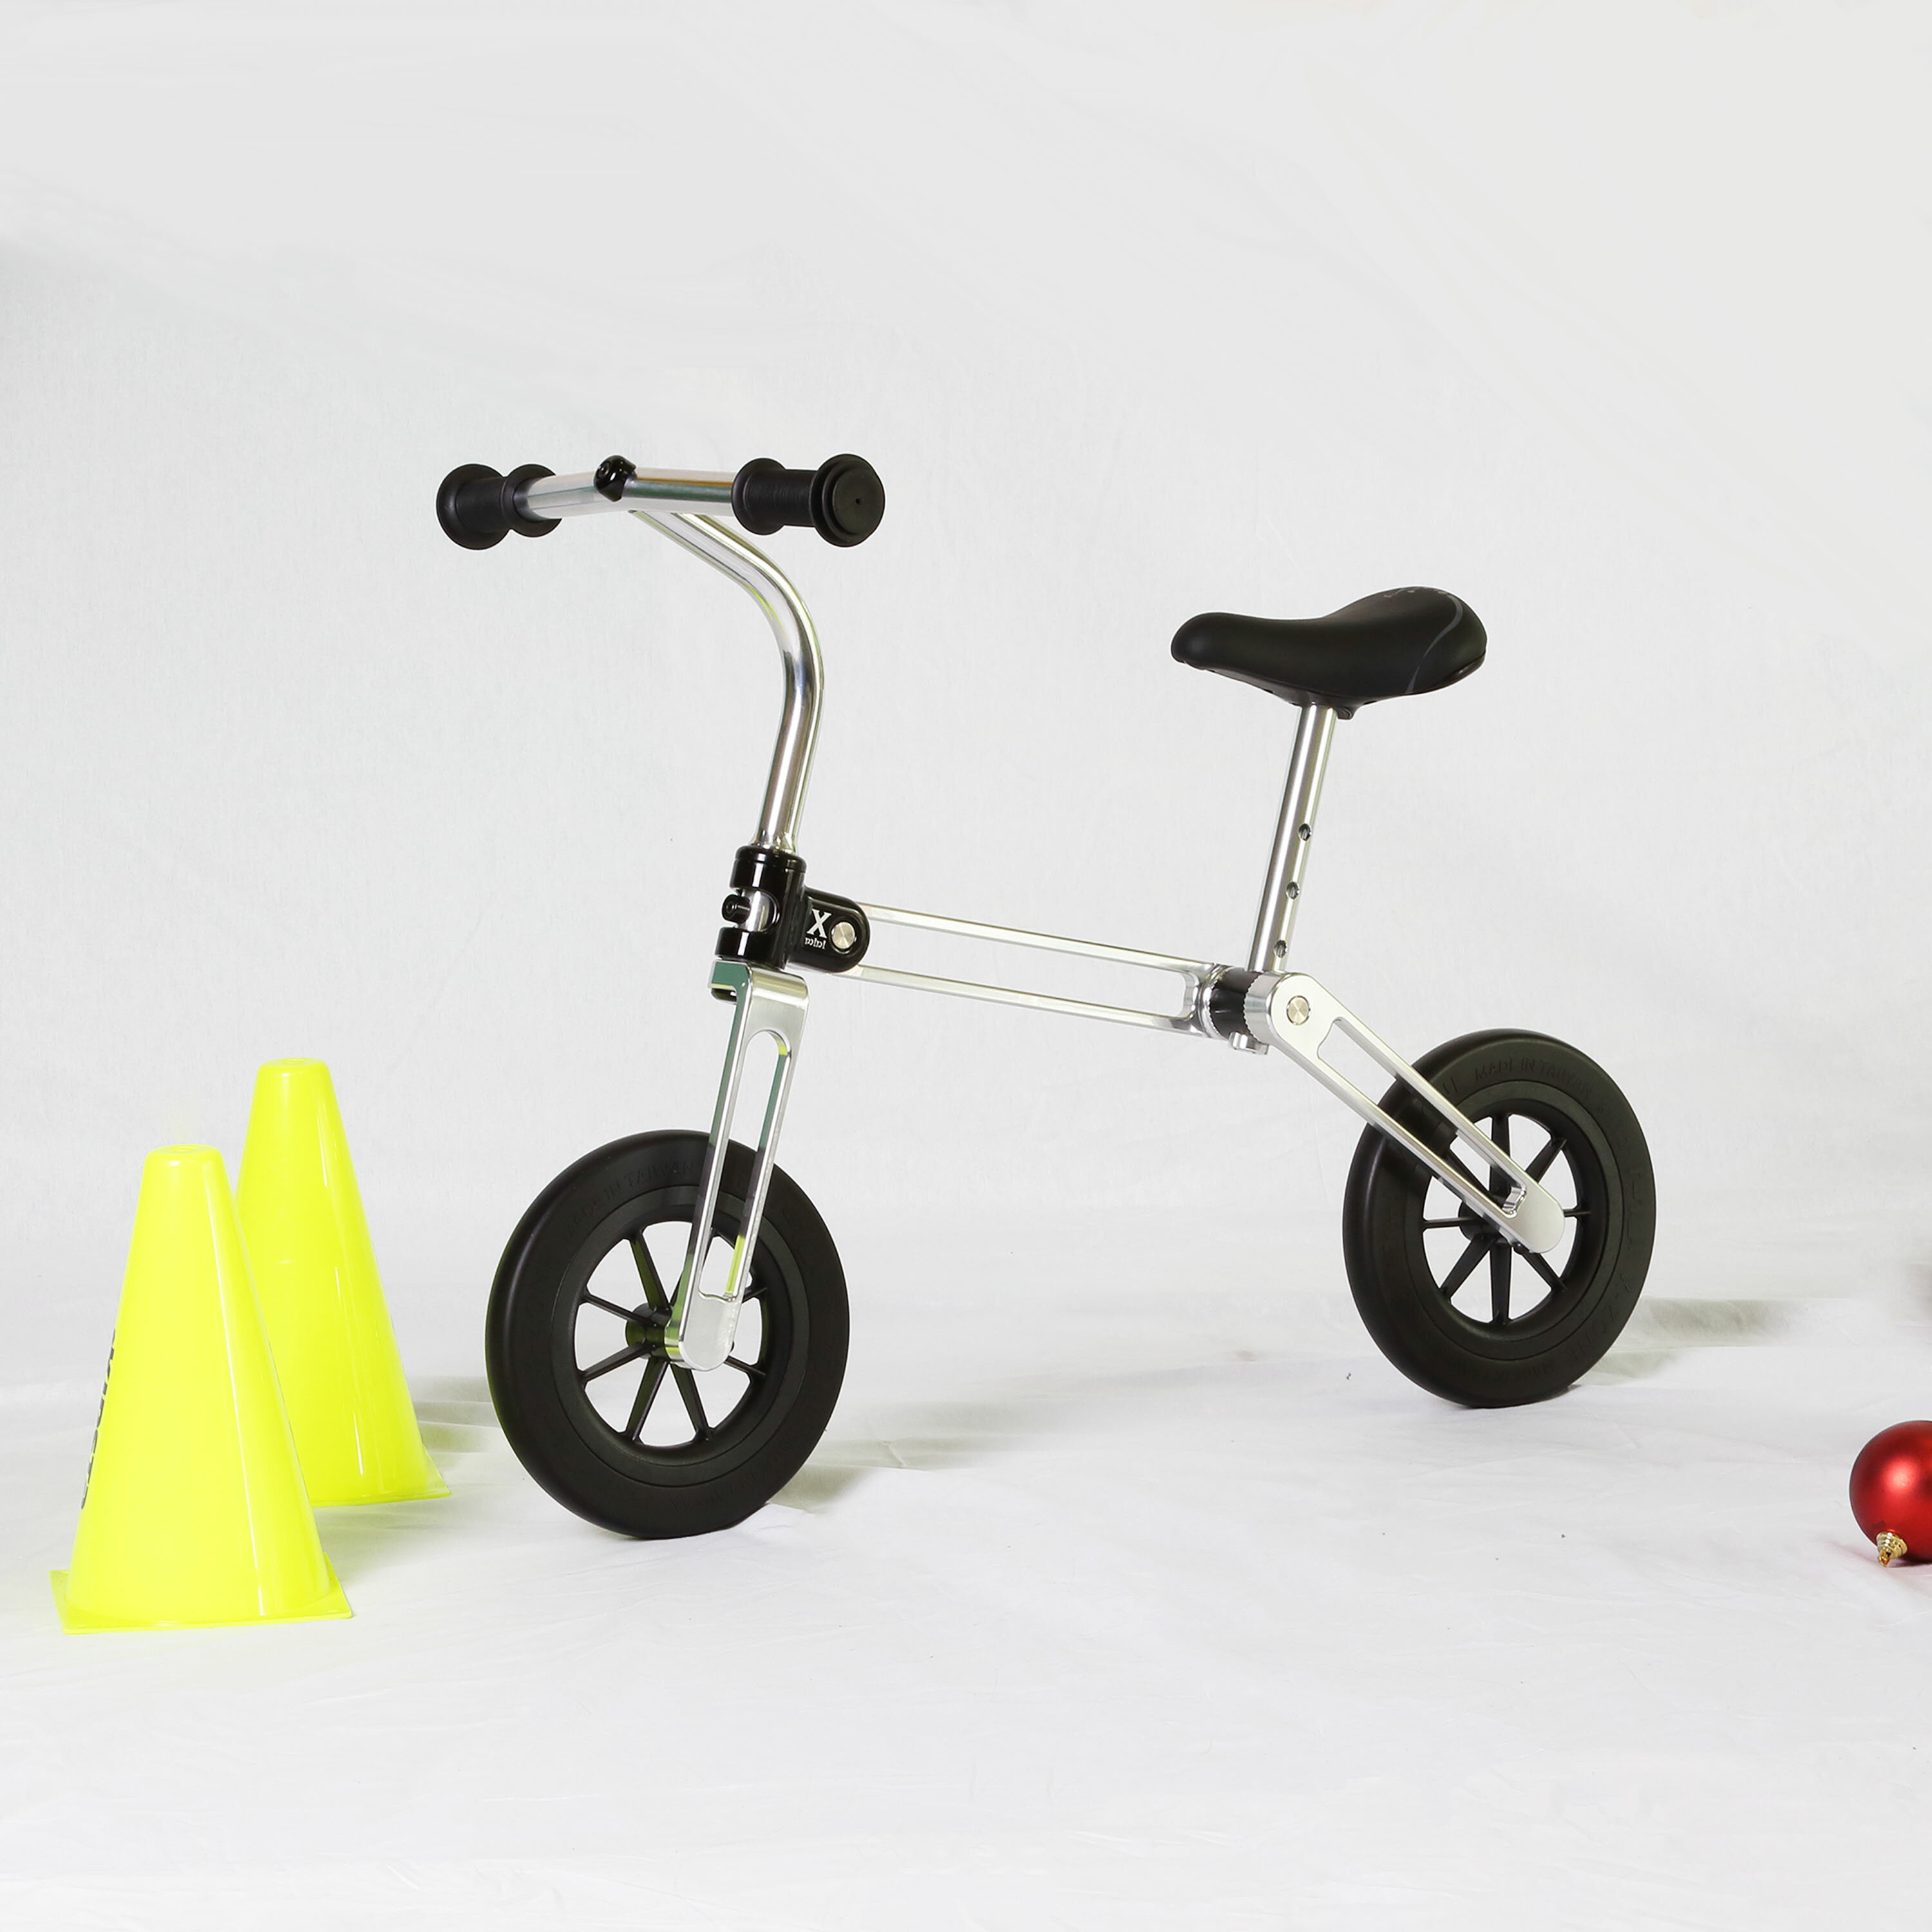 兒童平衡車/滑步車 全車鋁合金台灣製造 車身僅2.5公斤 通過SGS兒童腳踏車認證